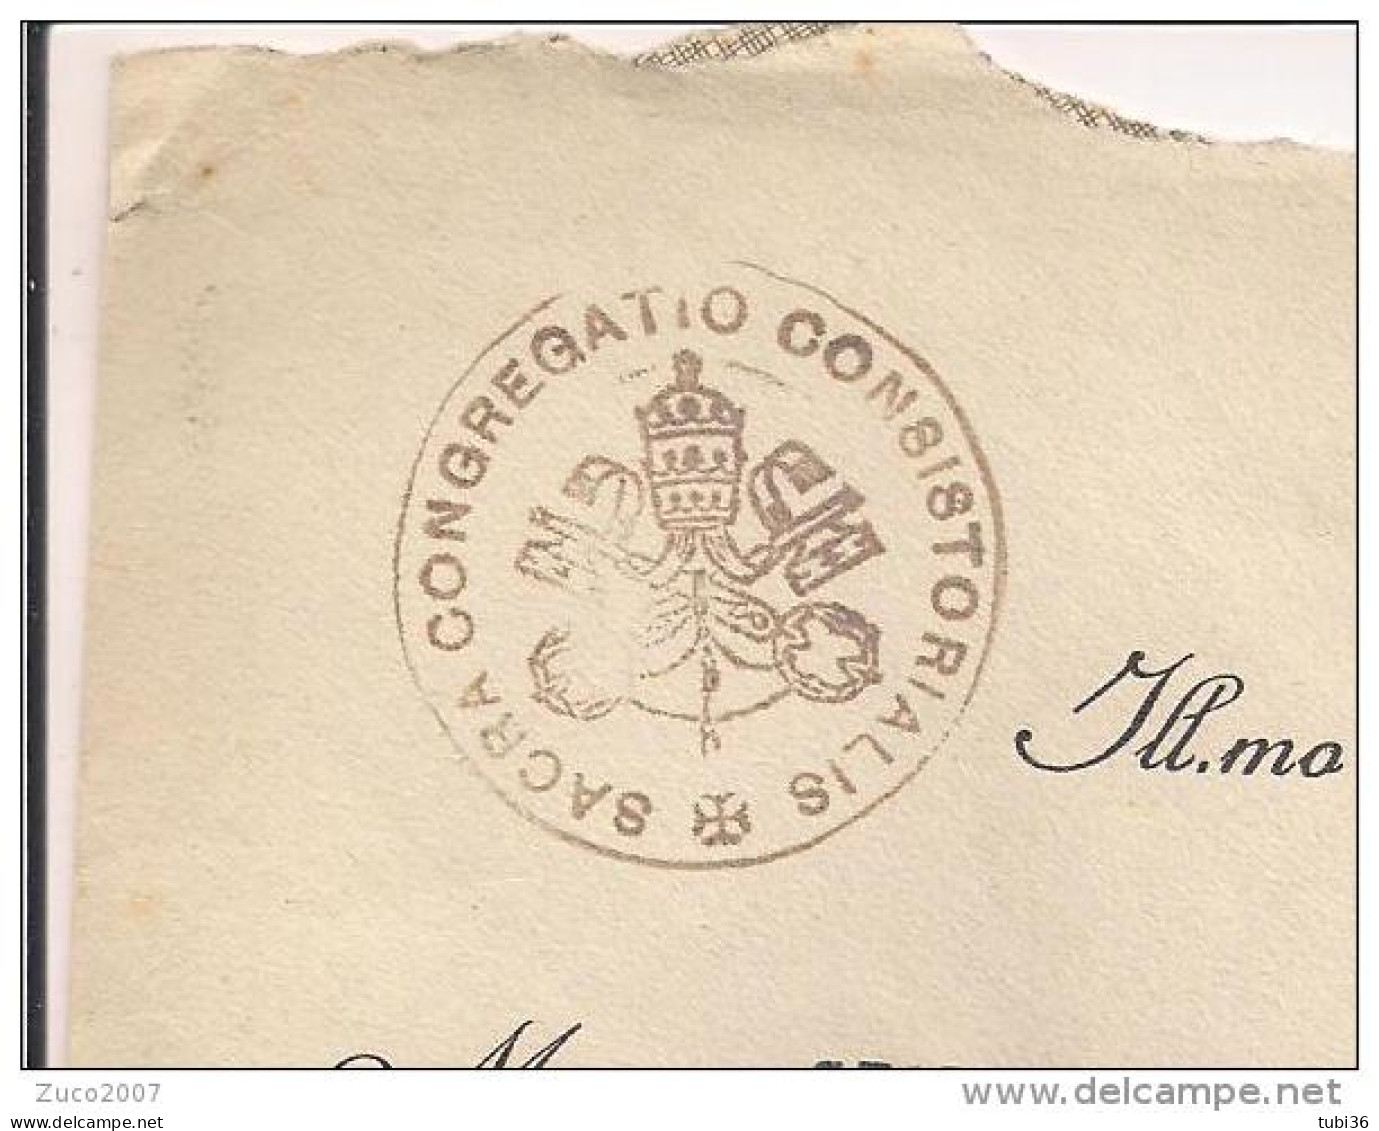 VATICANO,GIARDINI E MEDAGLIONI Cent.80,IN TARIFFA LETTERA,1939,POSTE CITTA DEL VATICANO,IMOLA,BOLOGNA,TIMBRO CERALACCA - Cartas & Documentos